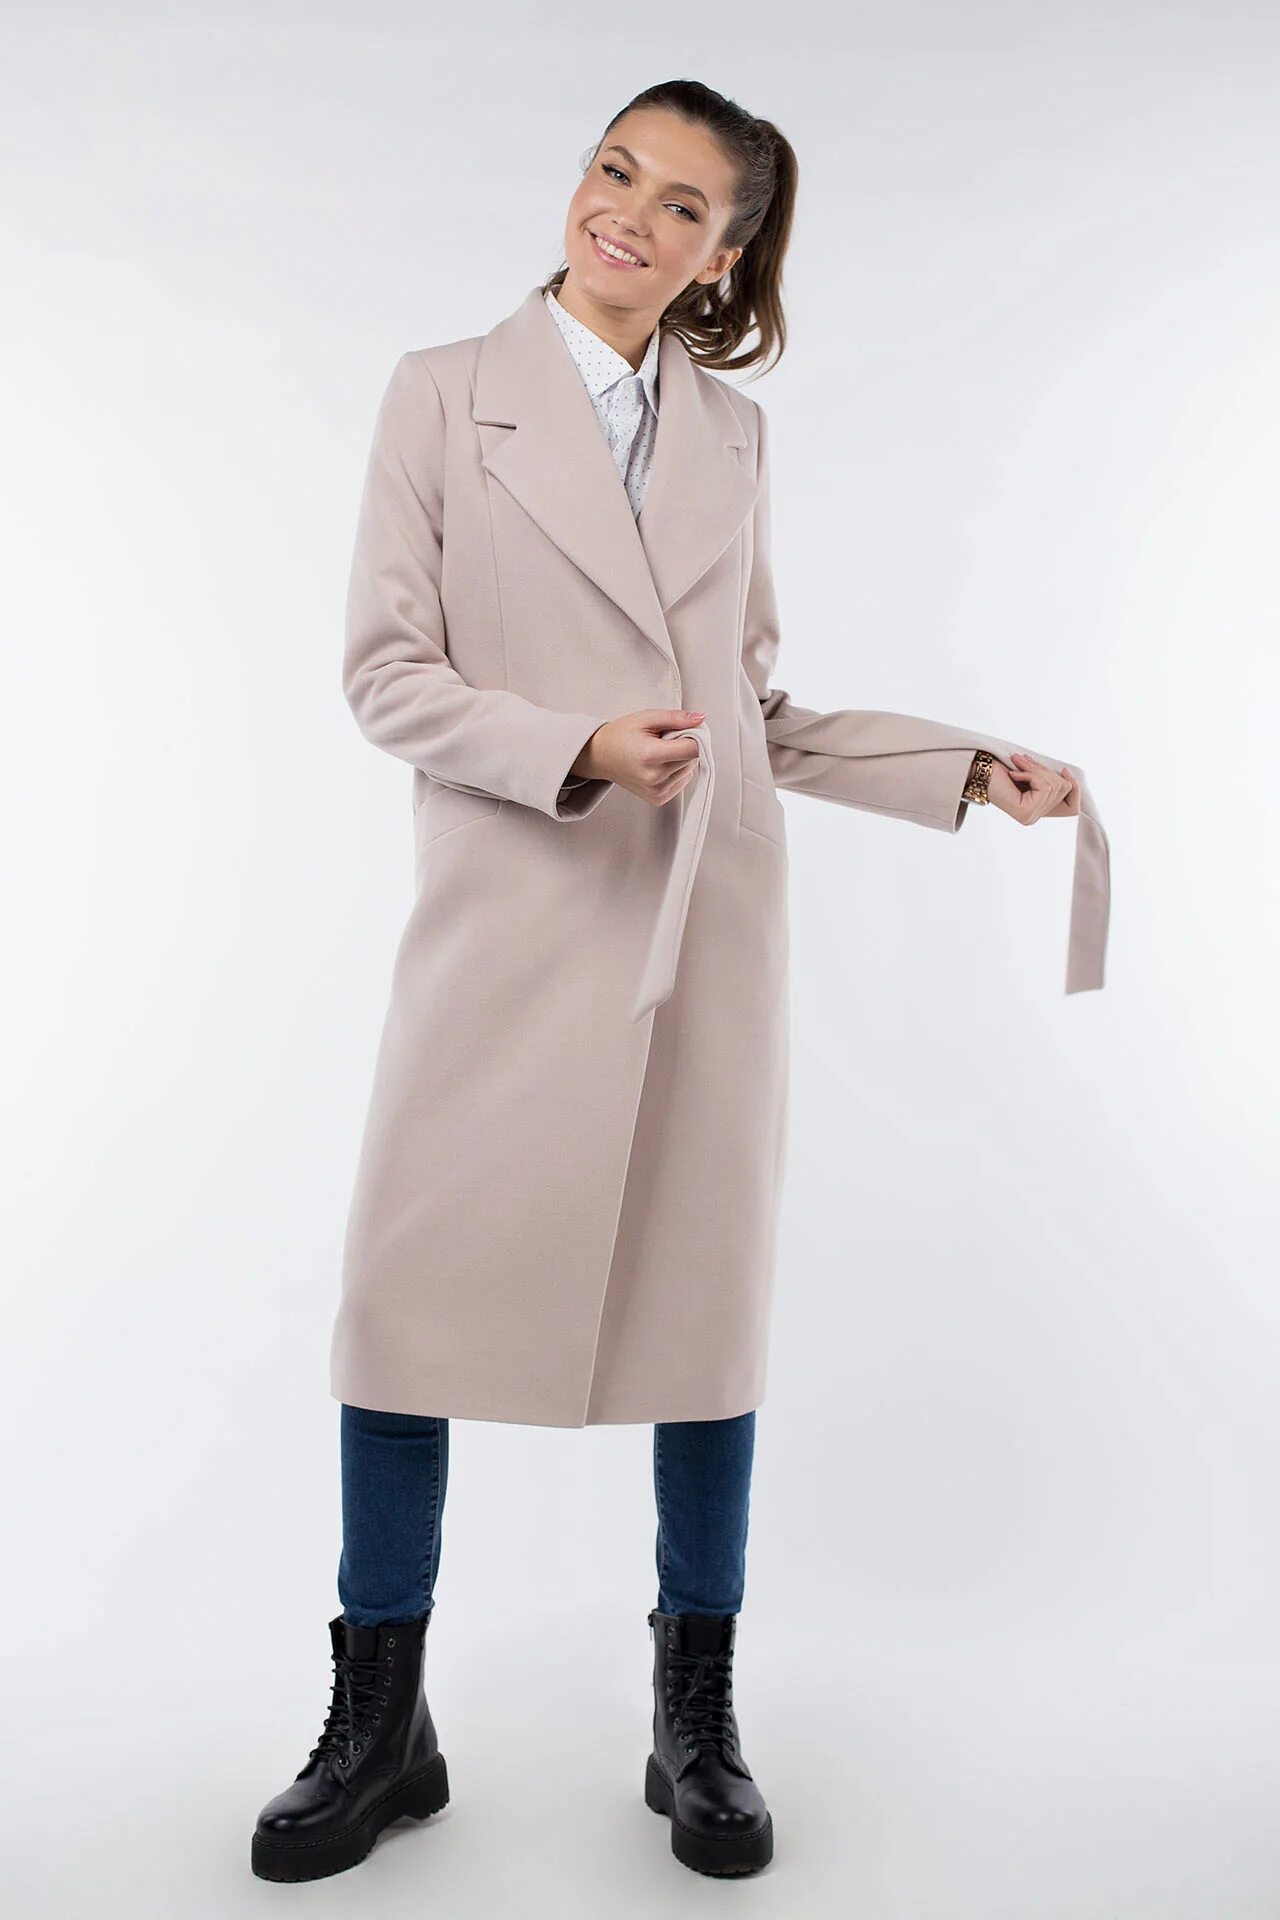 Пальто женское Каляев FW 2301. Каляев пальто демисезонное. Каляев пальто для женщин. Каляев пальто демисезонное для женщин.